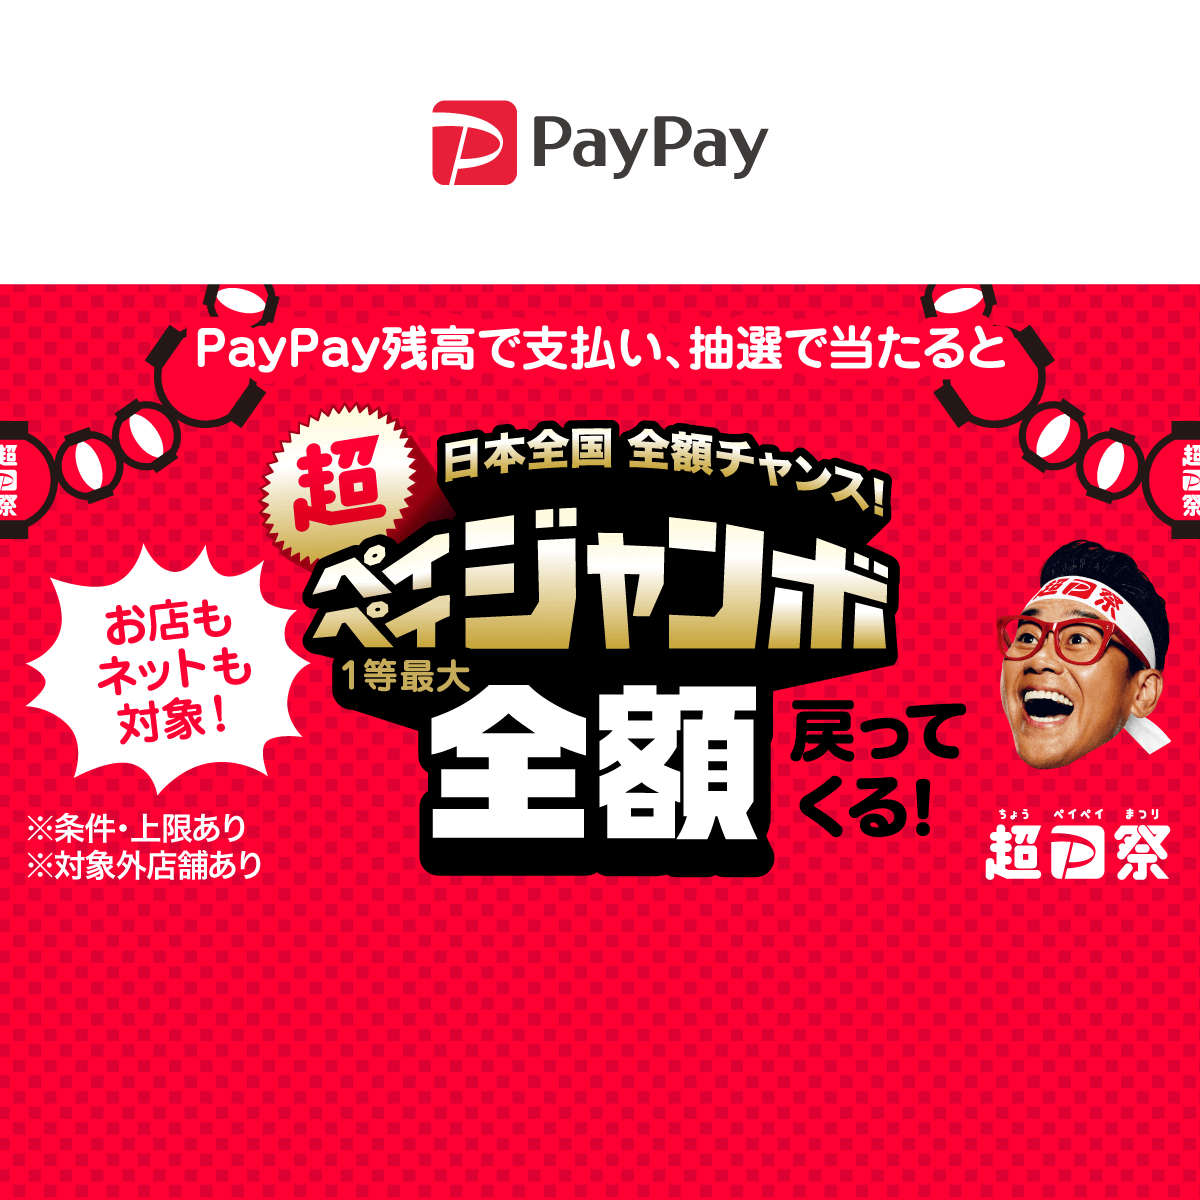 日本全国全額チャンス 超ペイペイジャンボ キャッシュレス決済のpaypay